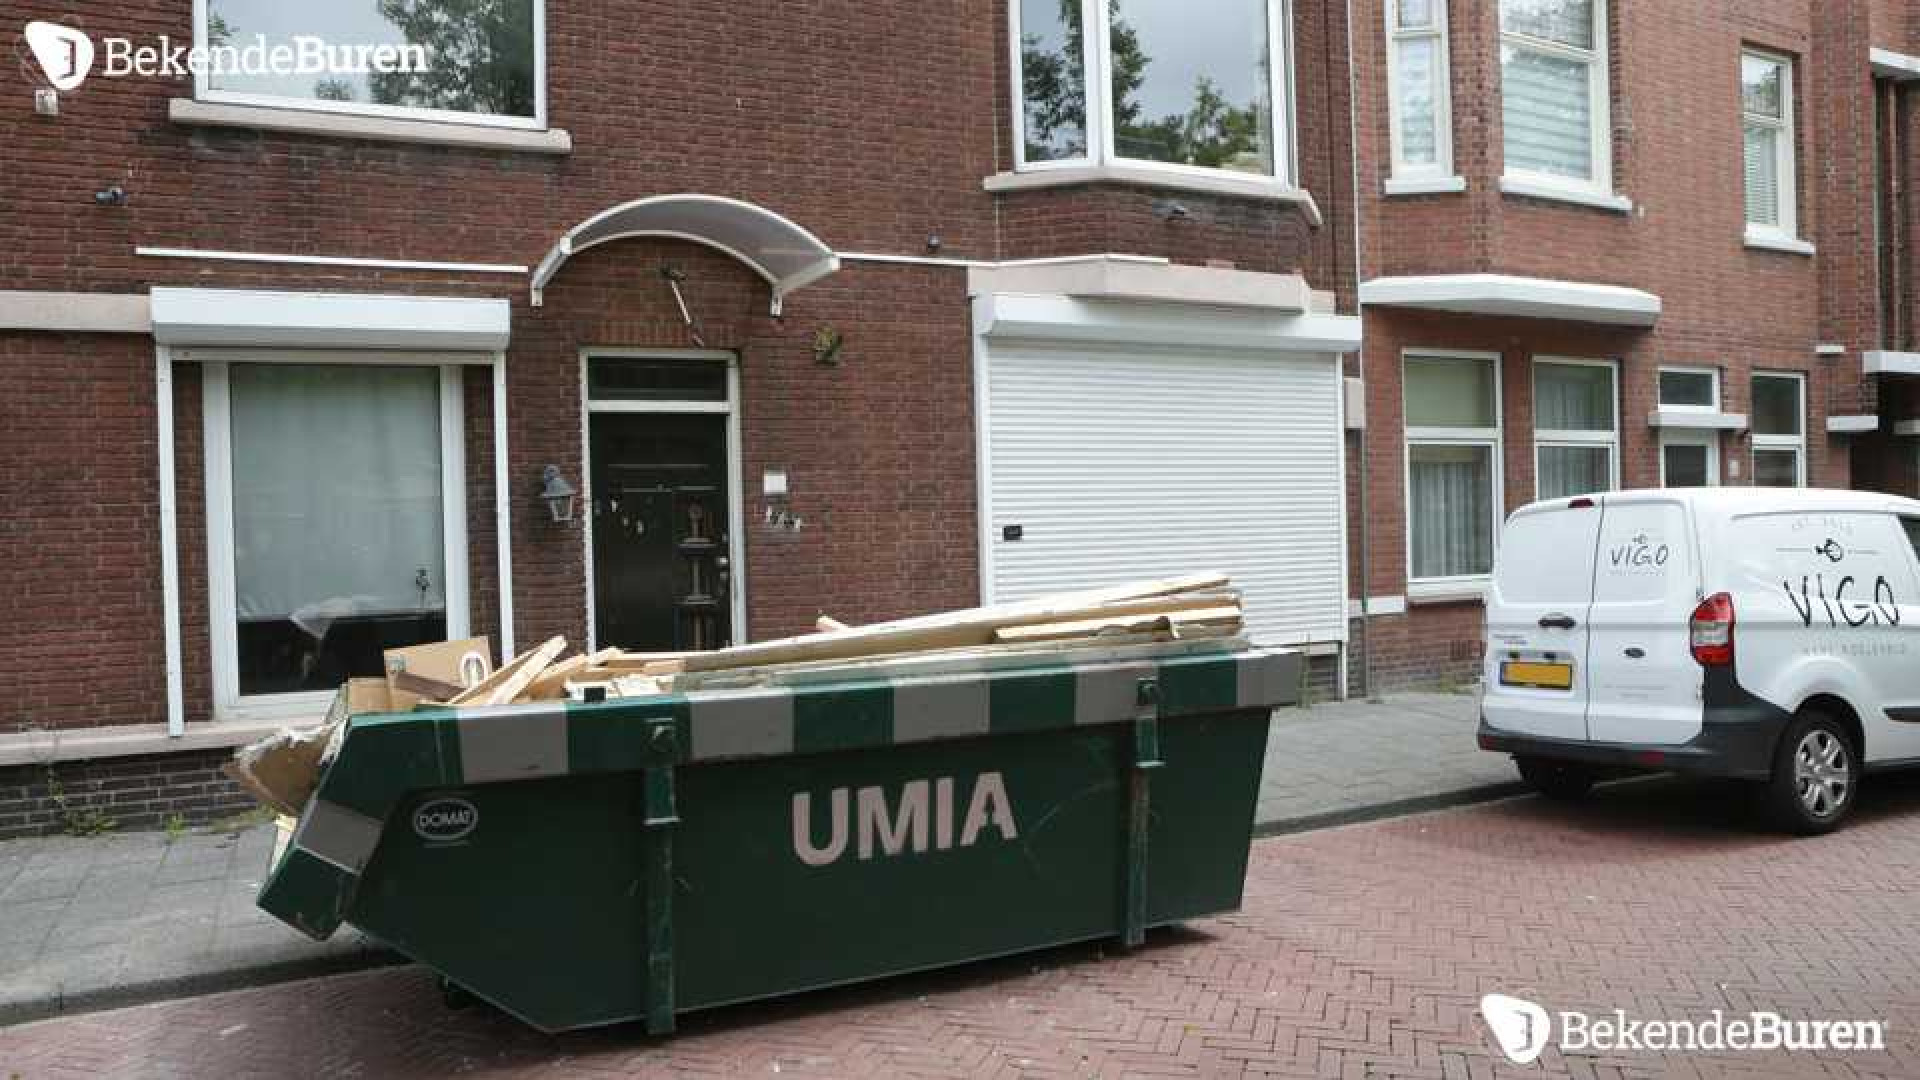 Bibi Breijman druk aan het verbouwen aan haar Haagse woning! Zie foto's 6